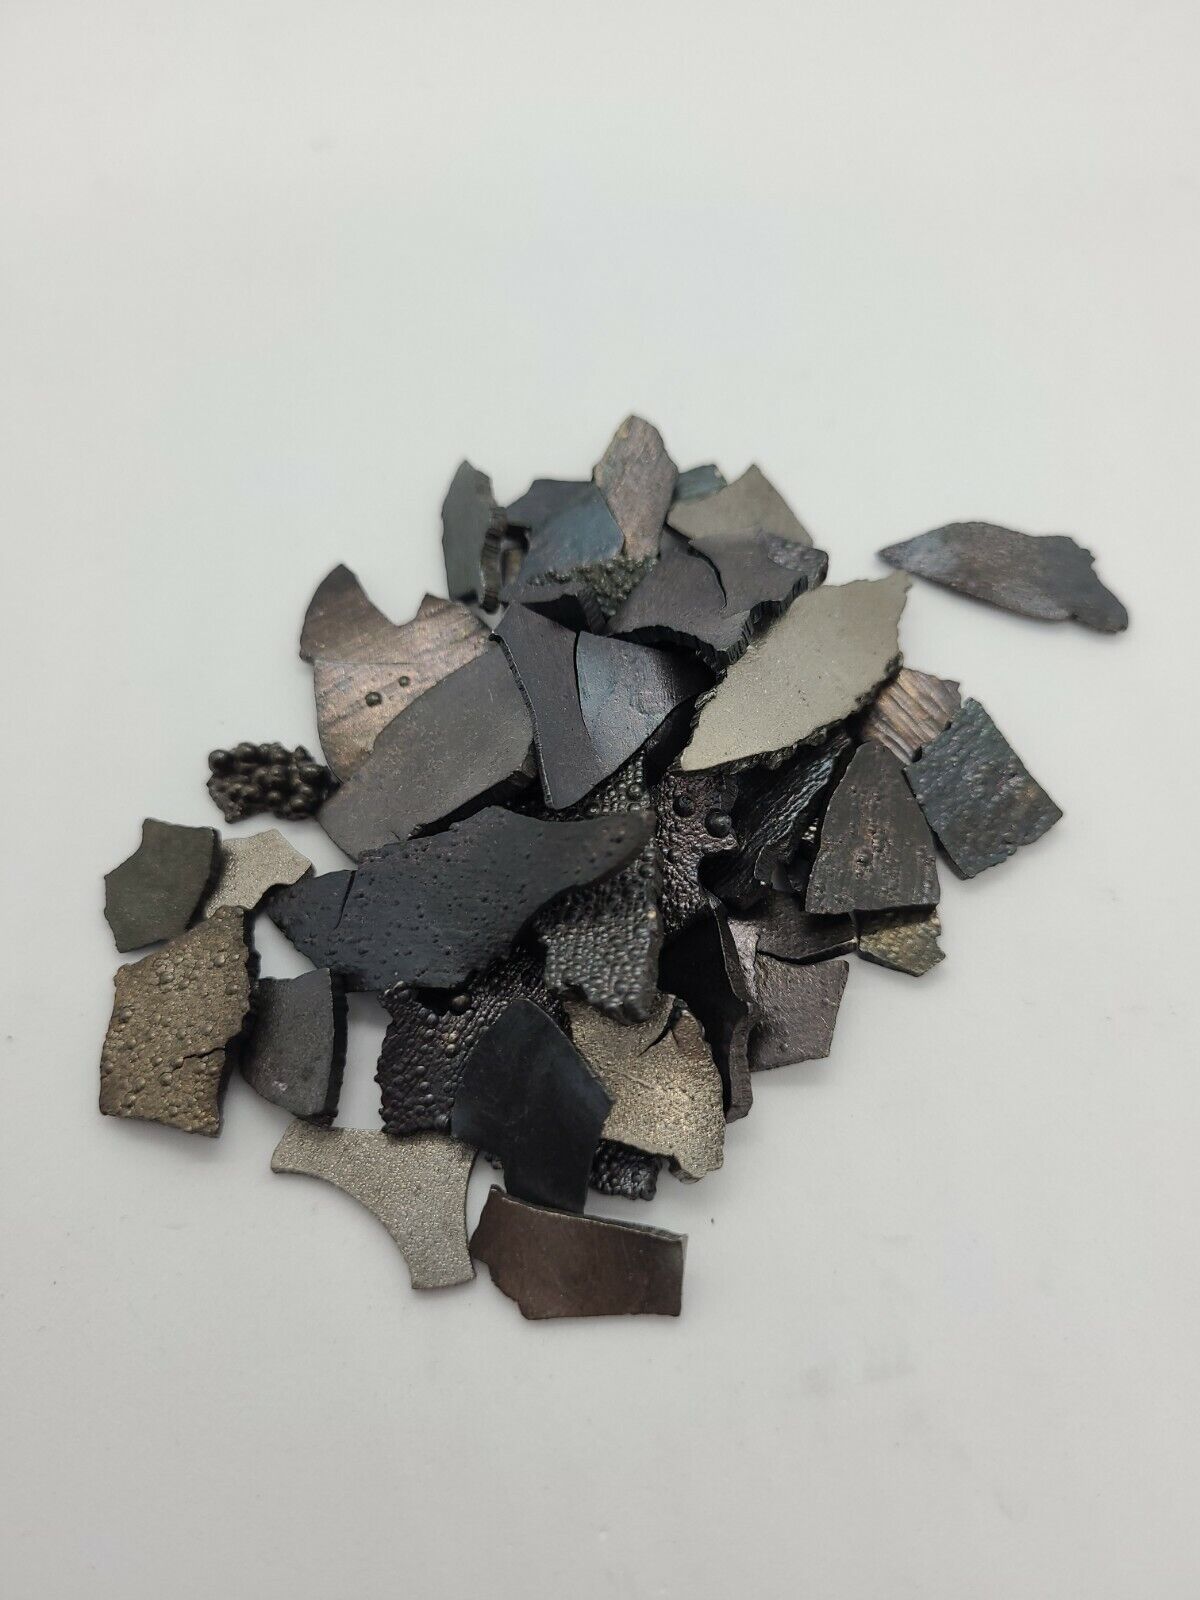 Cobalt Co Metal Periodic Element Sample 5g 99.95% Pure In Display Jar